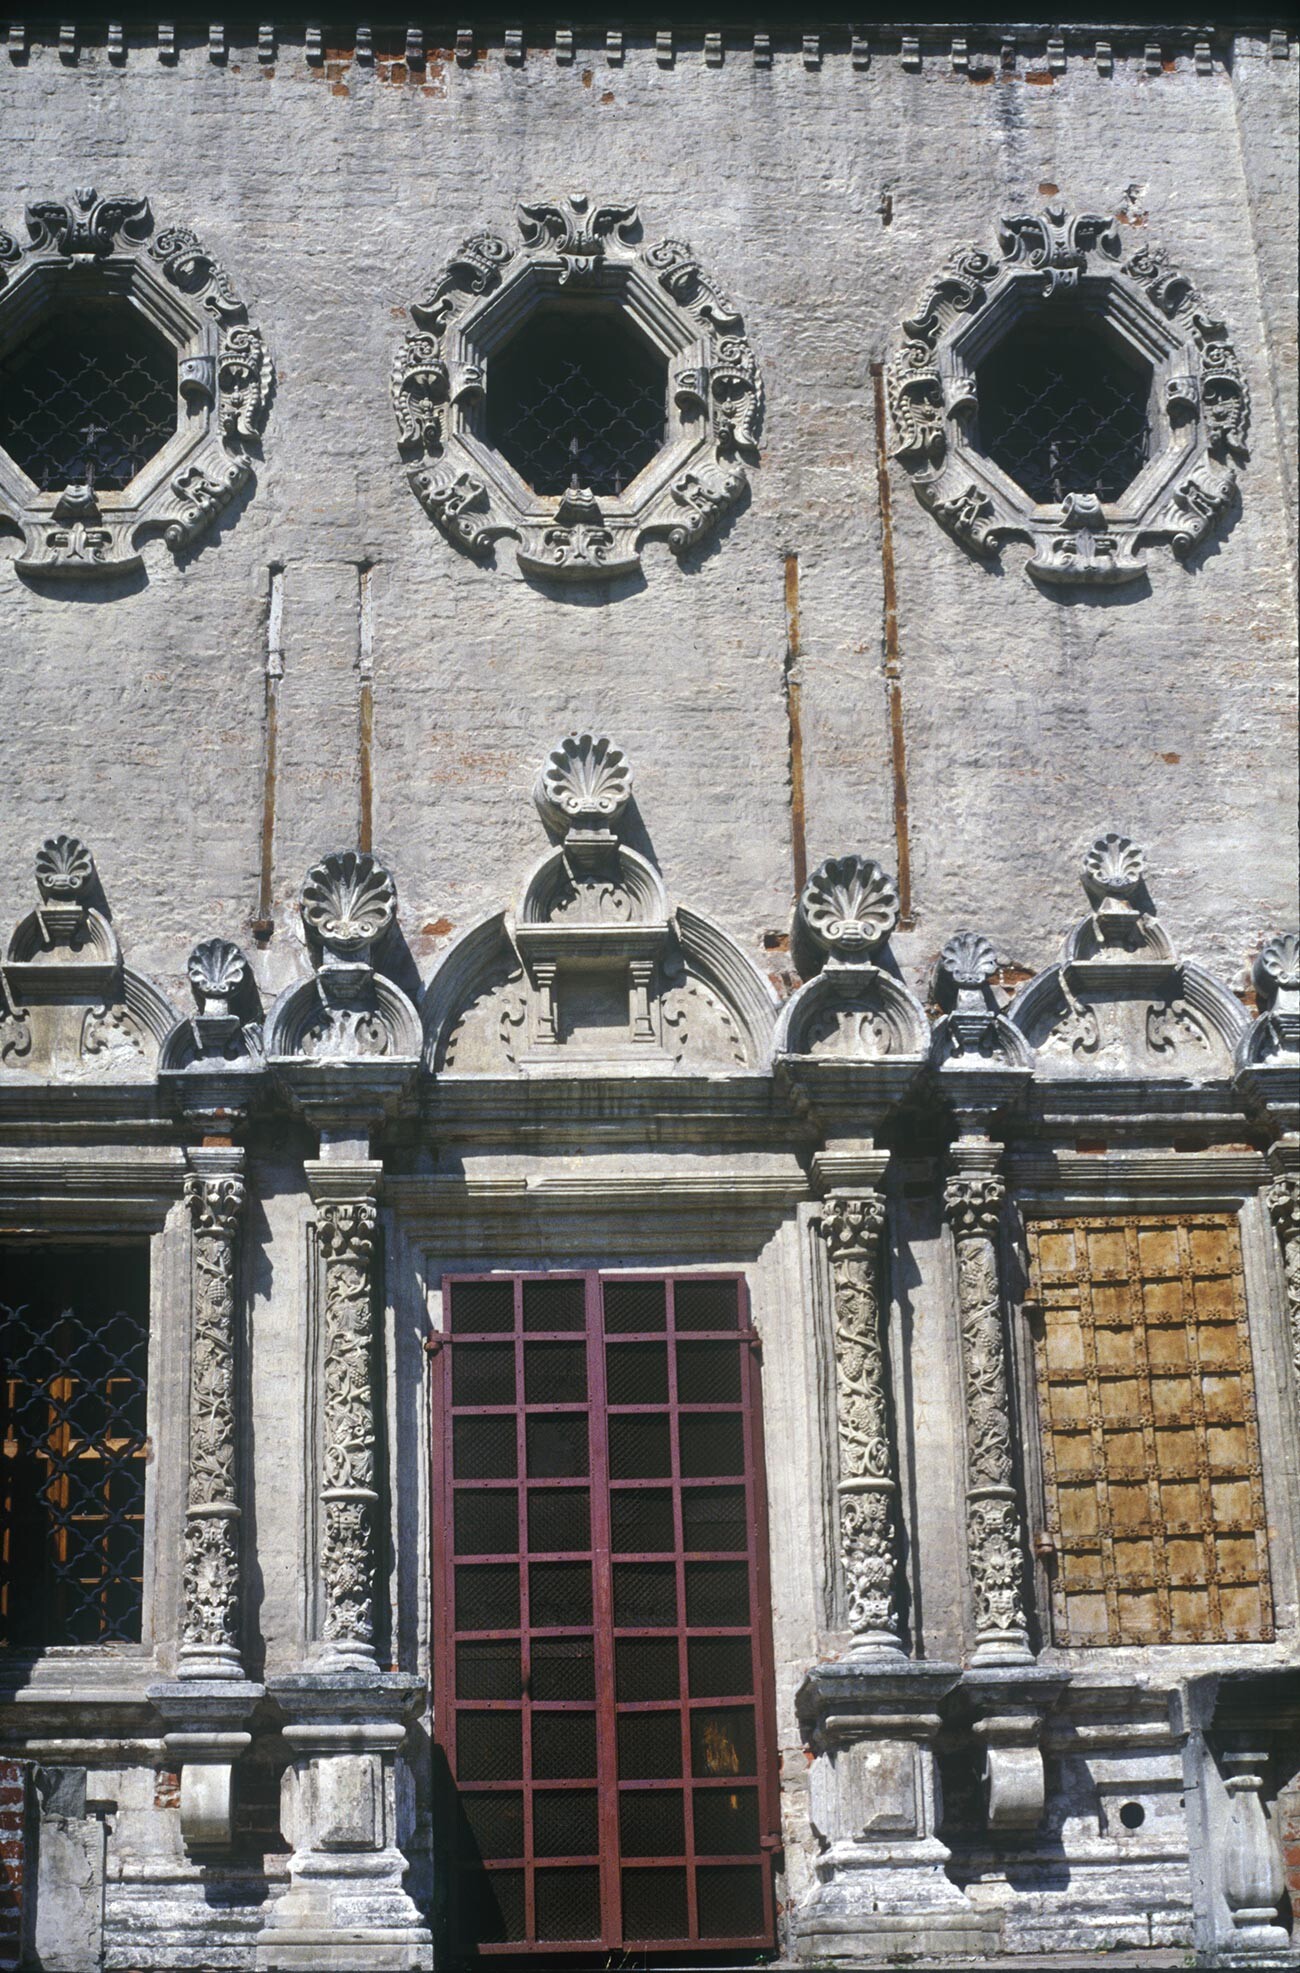 Trojice-Likovo. Cerkev Svete Trojice. Južna fasada z izrezljanim apnenčastim okrasjem nad portalom. 21. julij 1996.